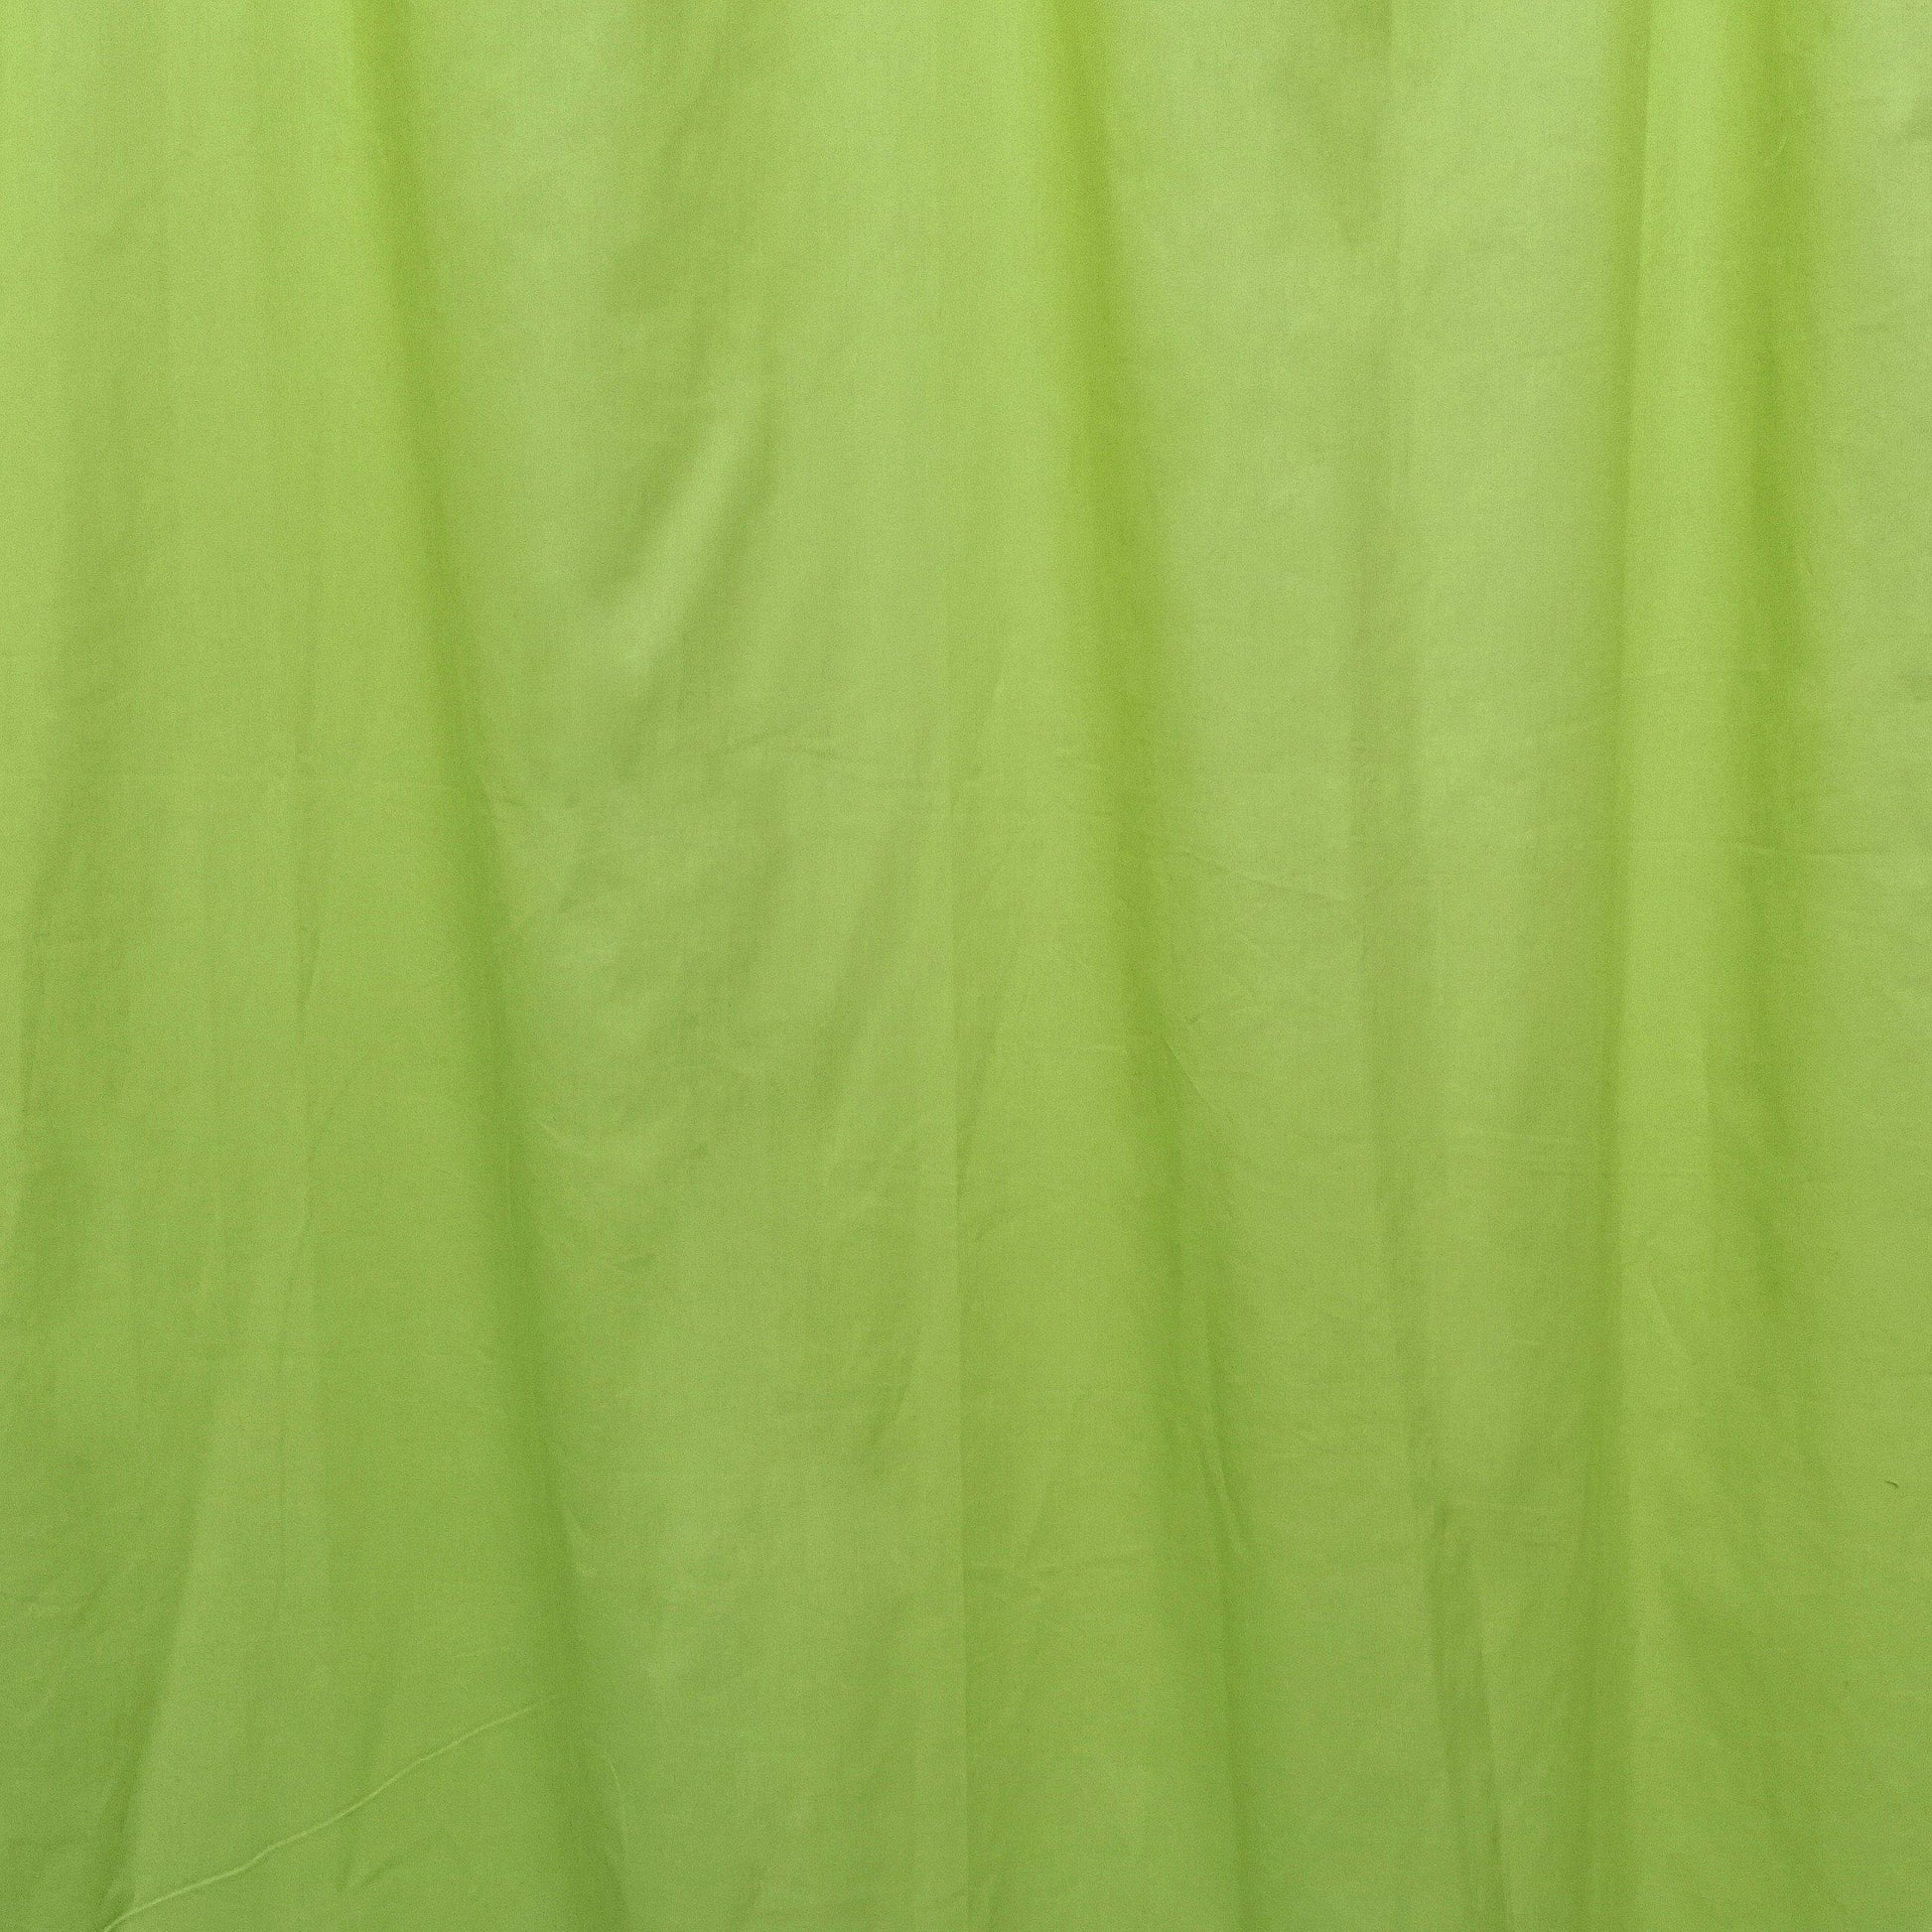 Lime Green Curtain Pair - The Teal Thread